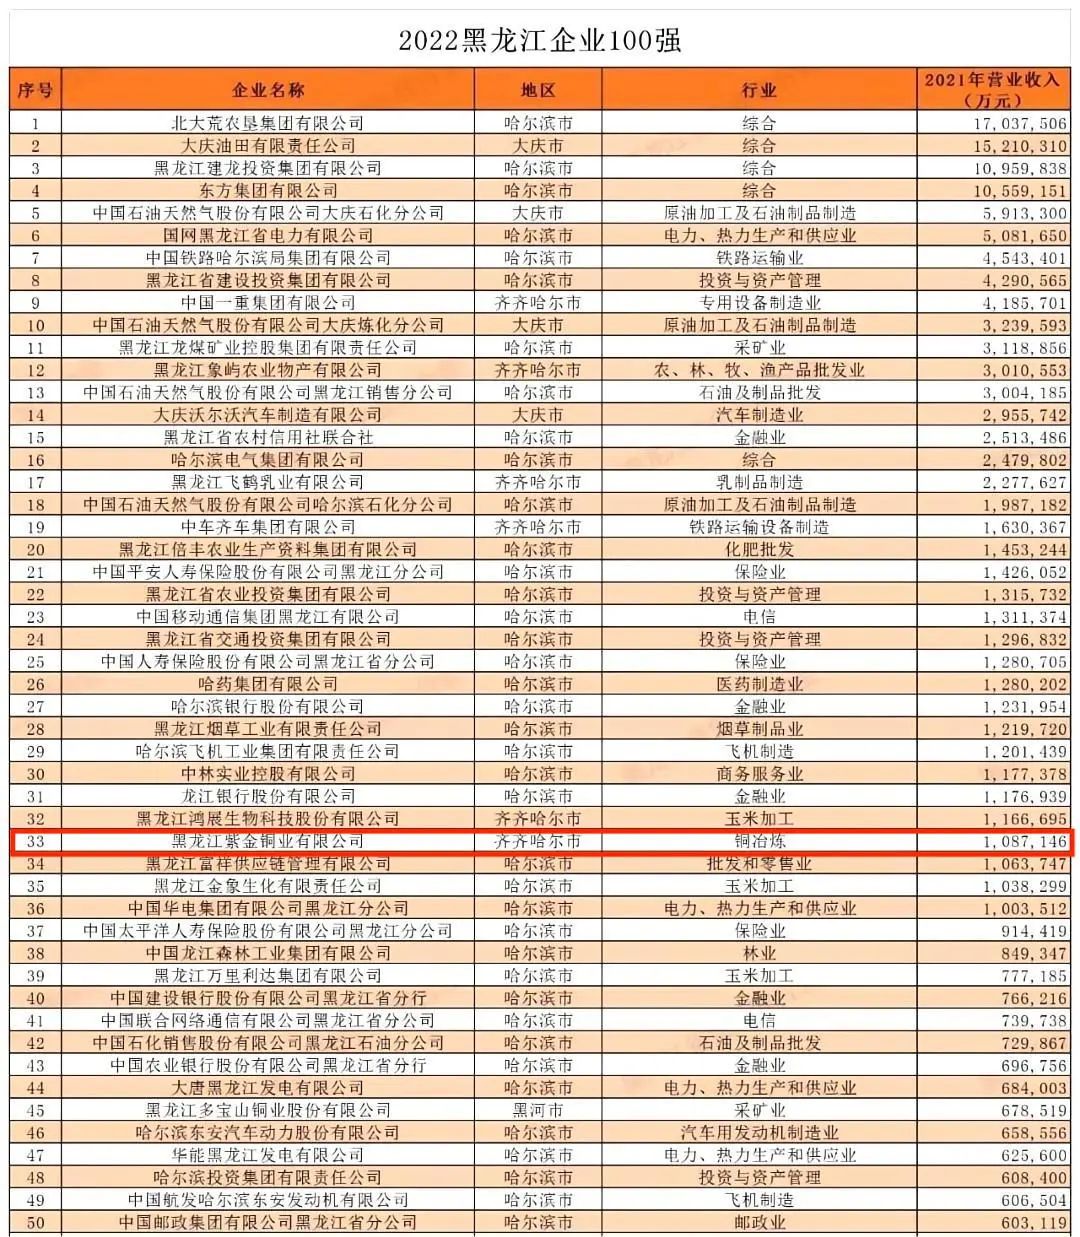 黑龙江紫金铜业位列2022黑龙江企业100强33位与黑龙江制造业企业100强16位